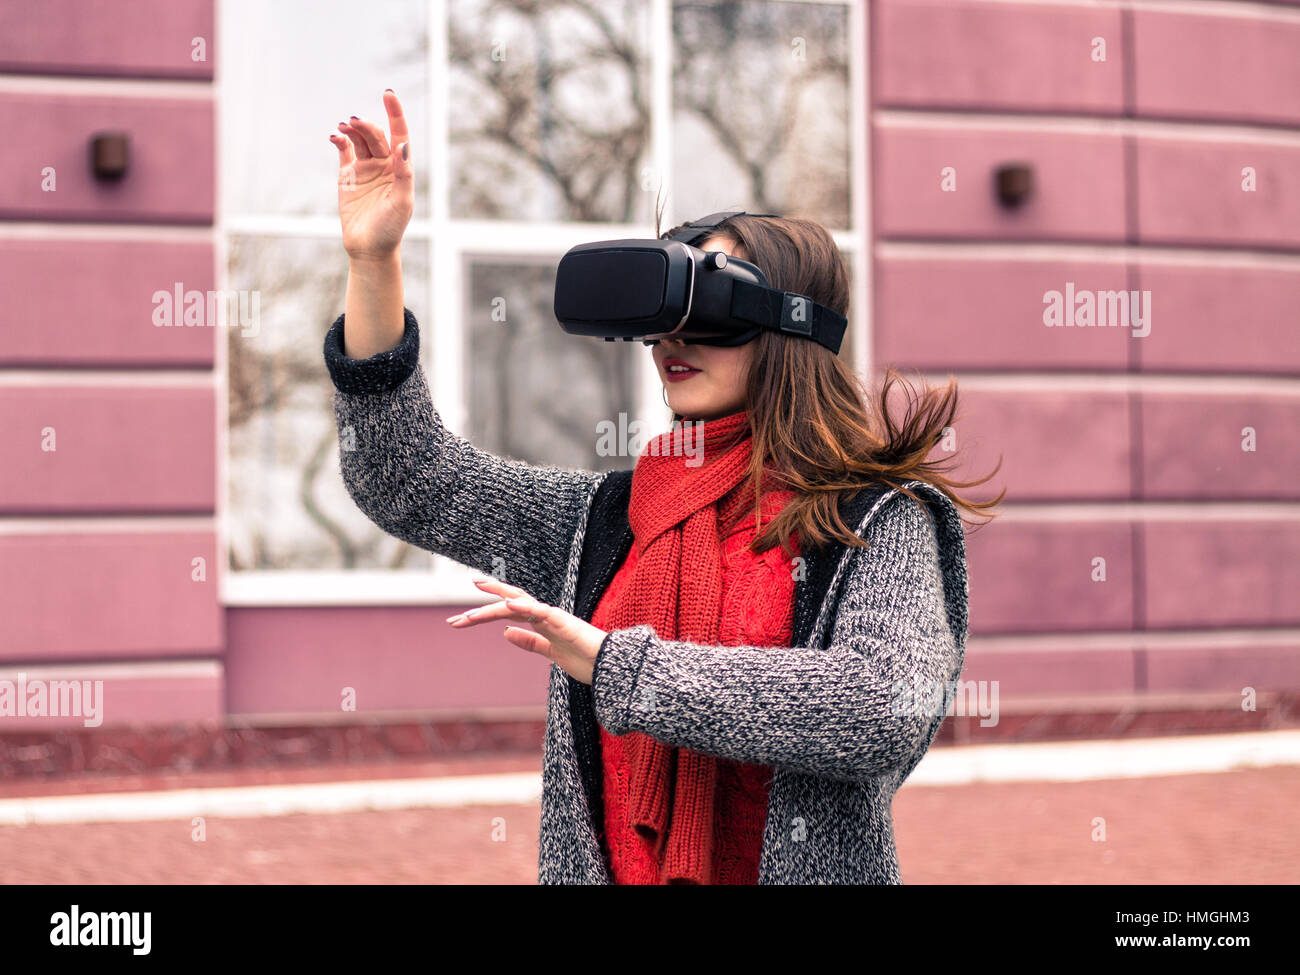 Casque de réalité virtuelle, lunettes, lunettes VR VR - belle jeune fille avec casque de réalité virtuelle ou des lunettes 3d poser dans la rue intéressé par Banque D'Images